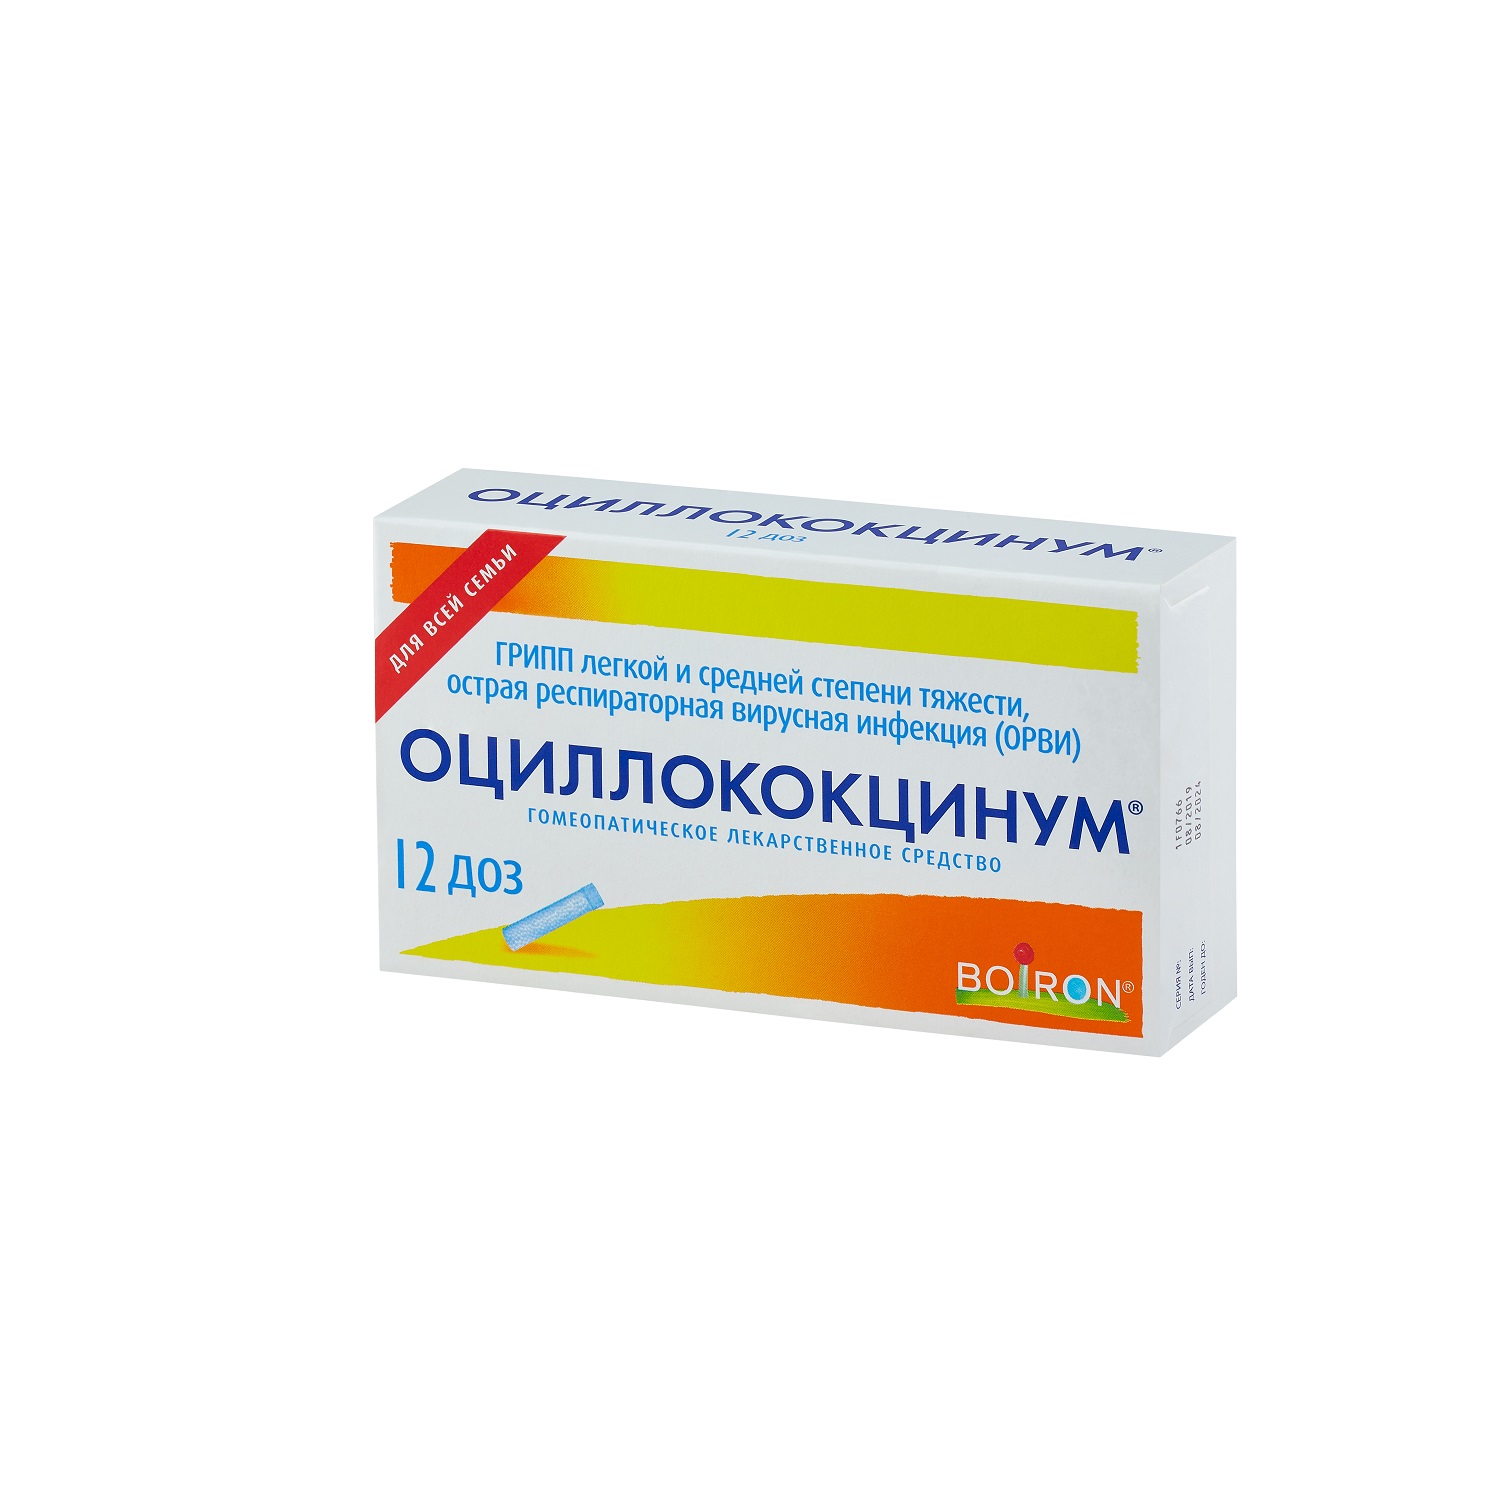 Купить Оциллококцинум гранулы 1 г 1 доз 12 шт., Boiron